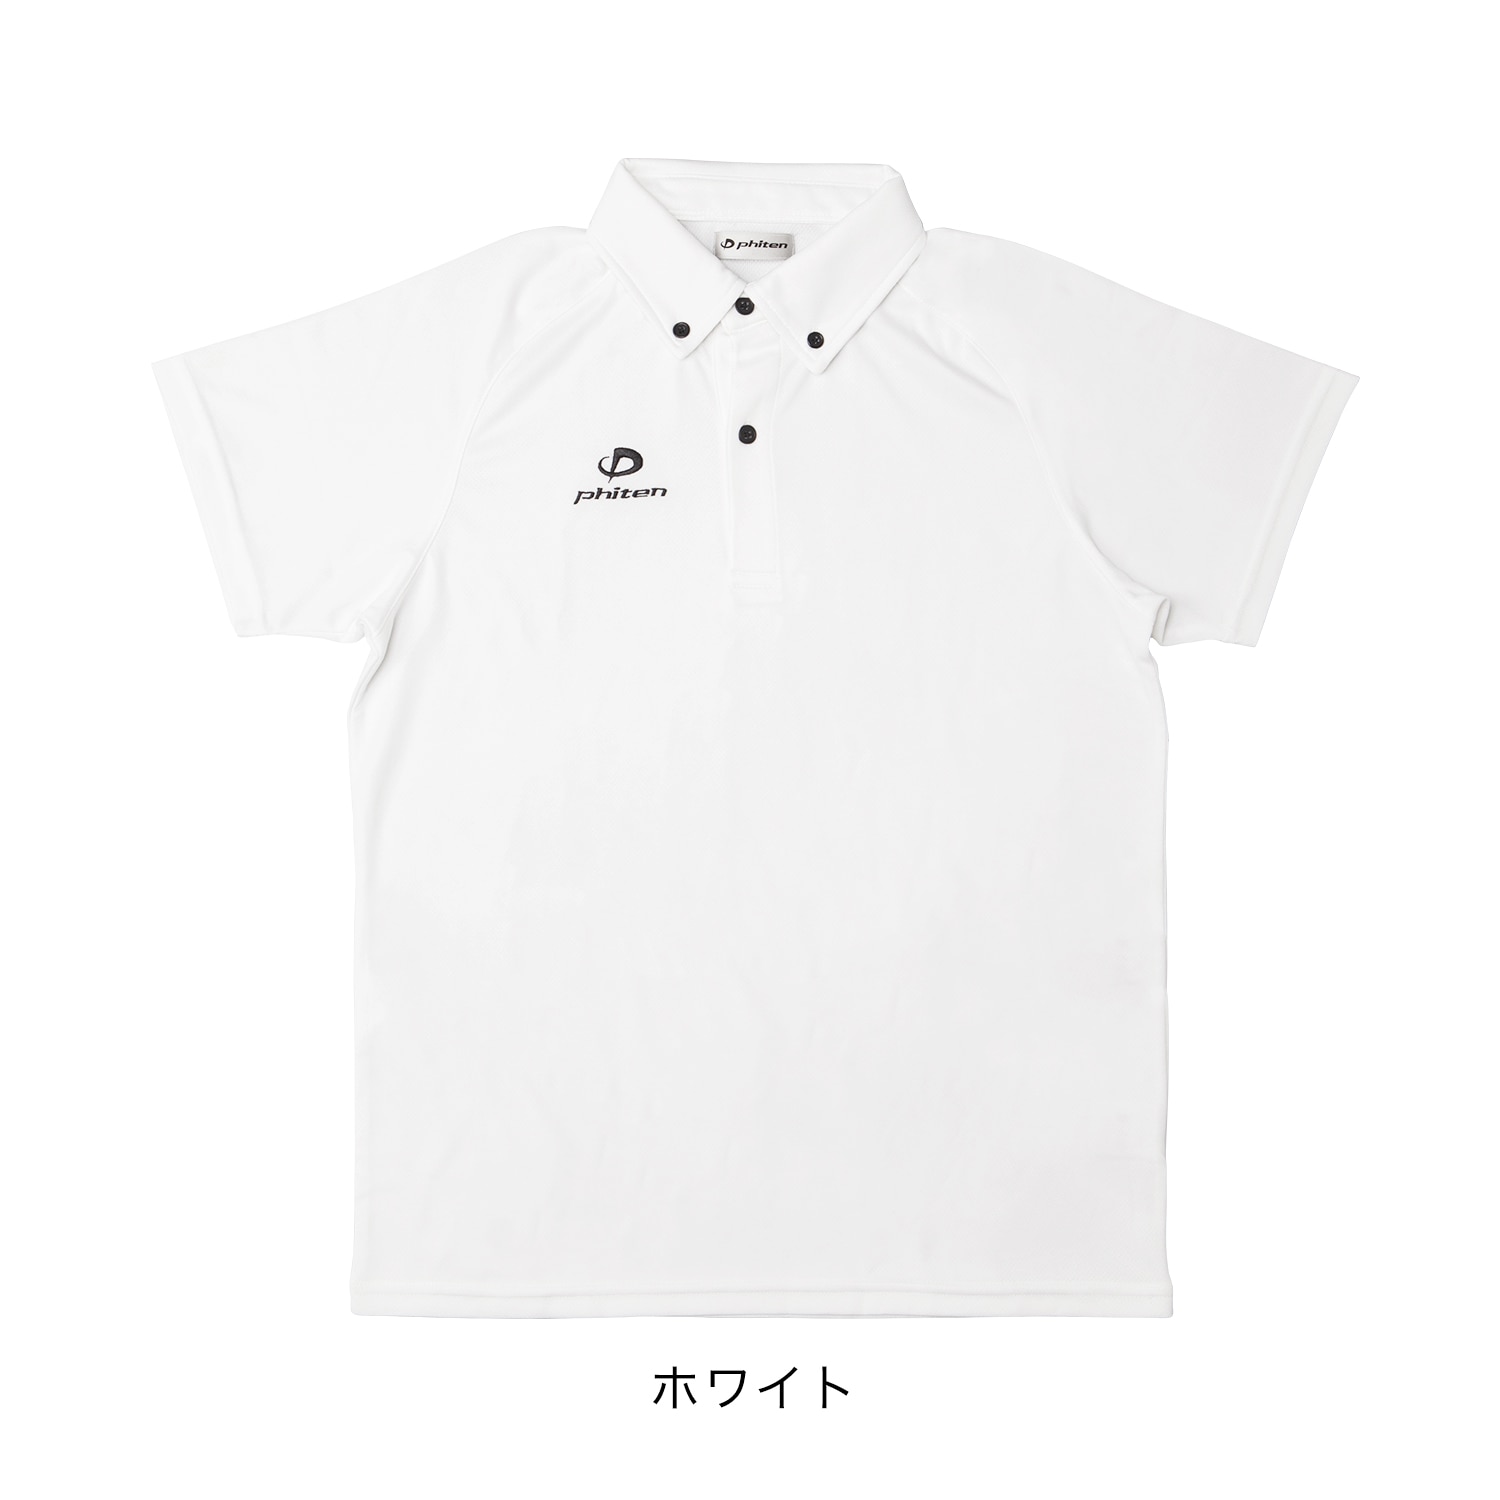 ポロシャツ(ライト) | ファイテン公式通販サイト【ファイテン